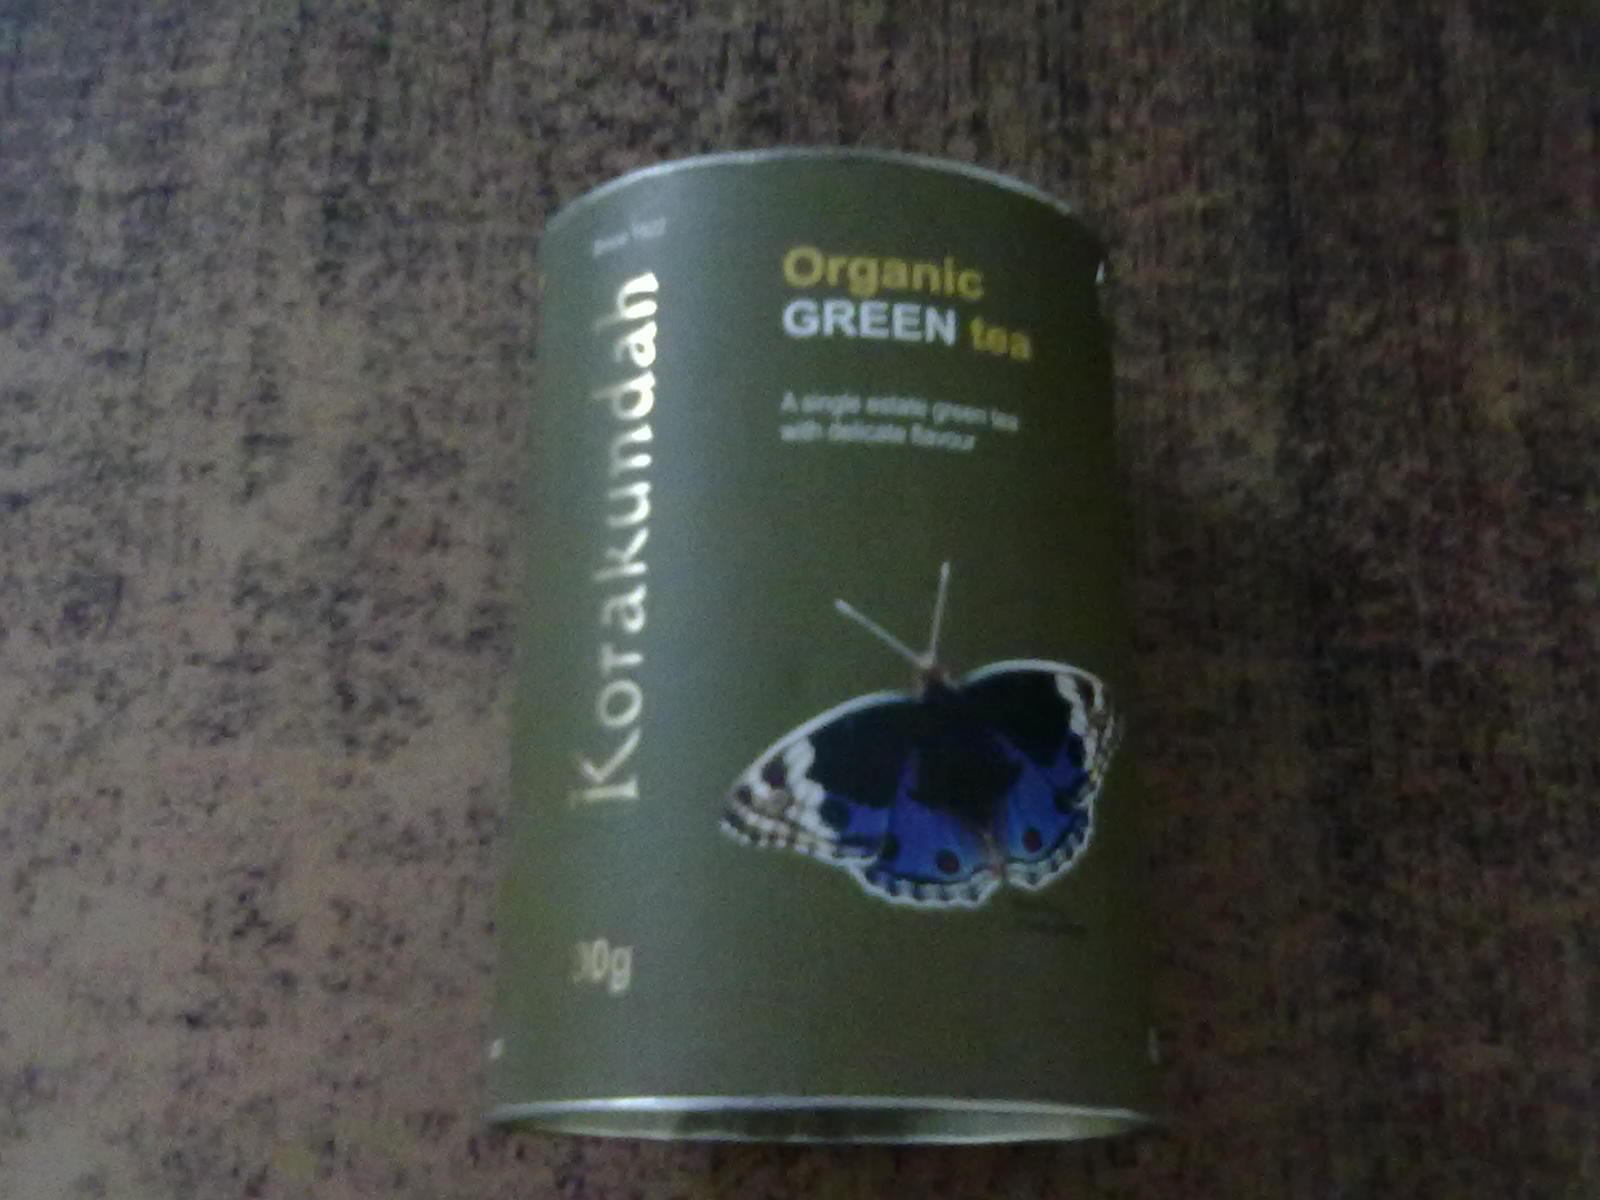 Organic Green Tea Manufacturer Supplier Wholesale Exporter Importer Buyer Trader Retailer in Bangalore Karnataka India